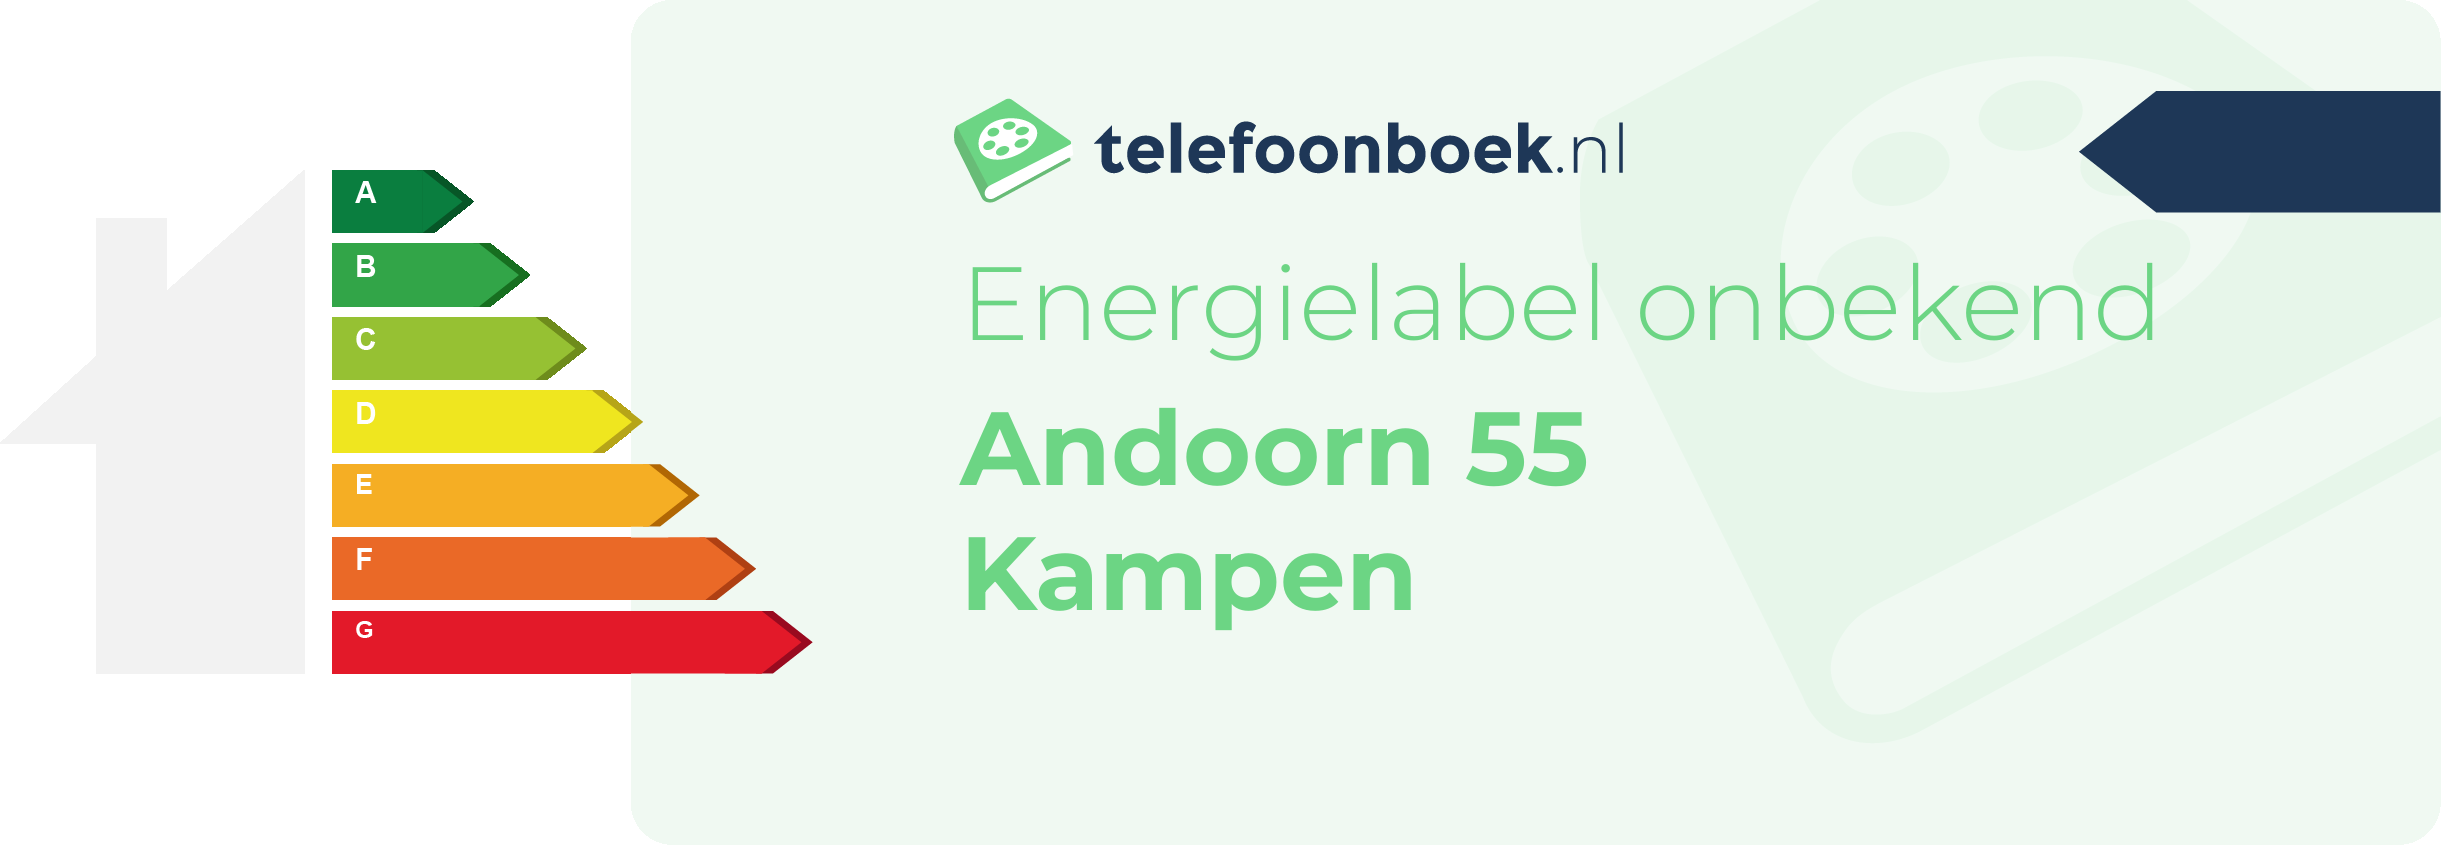 Energielabel Andoorn 55 Kampen